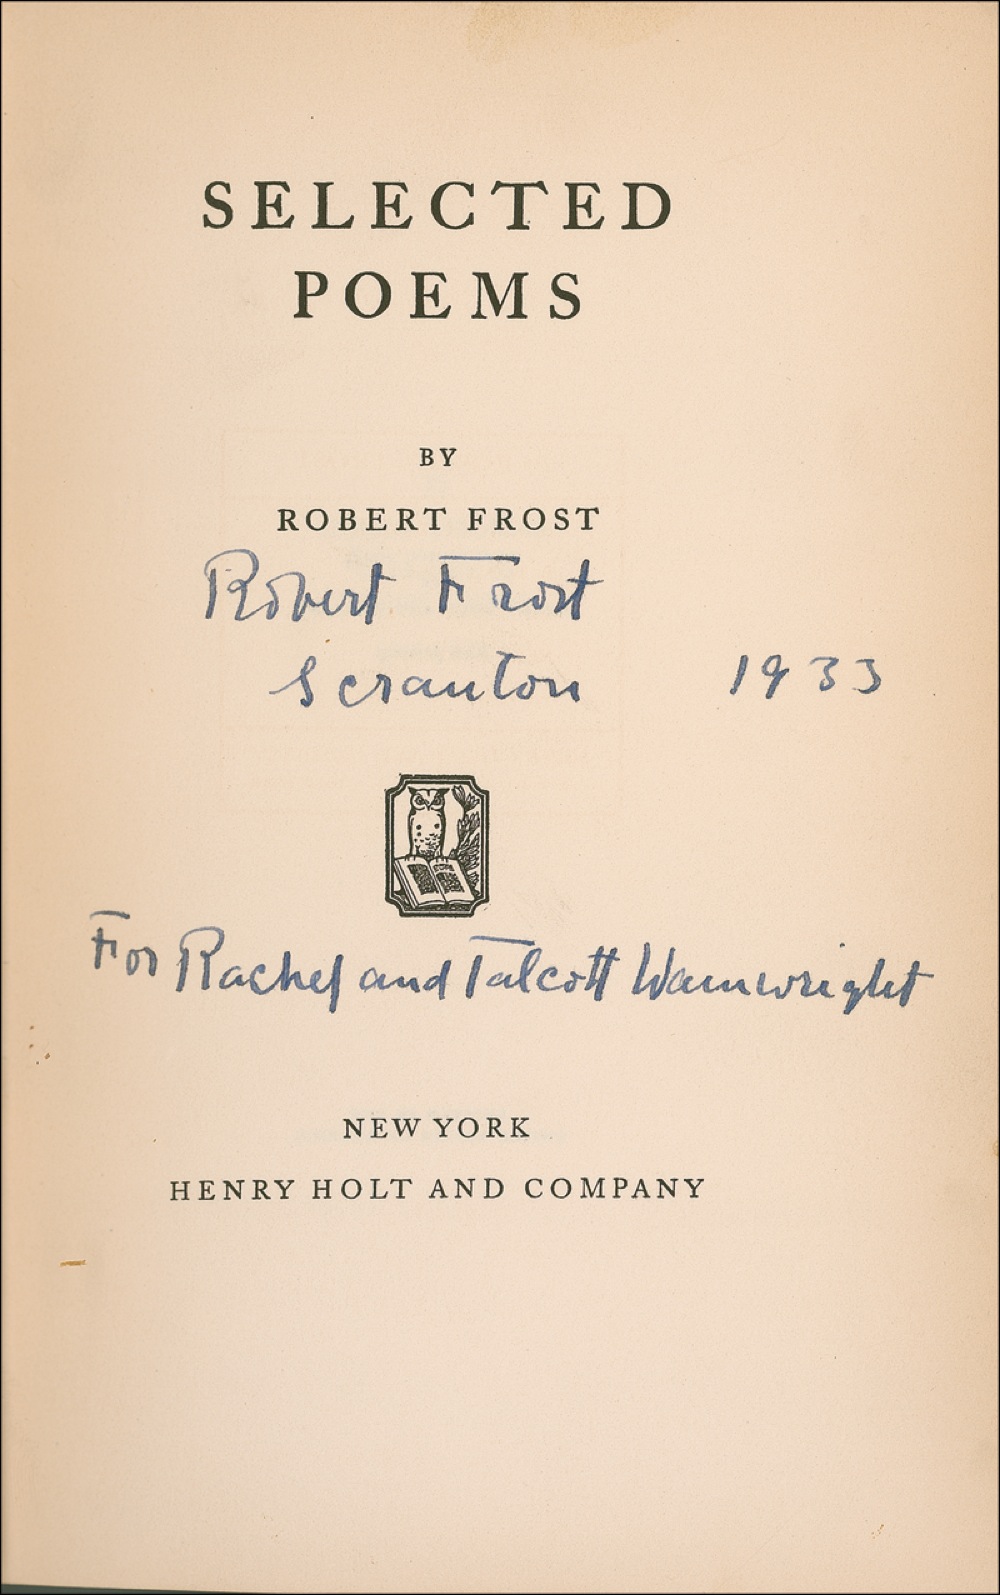 Lot #579 Robert Frost